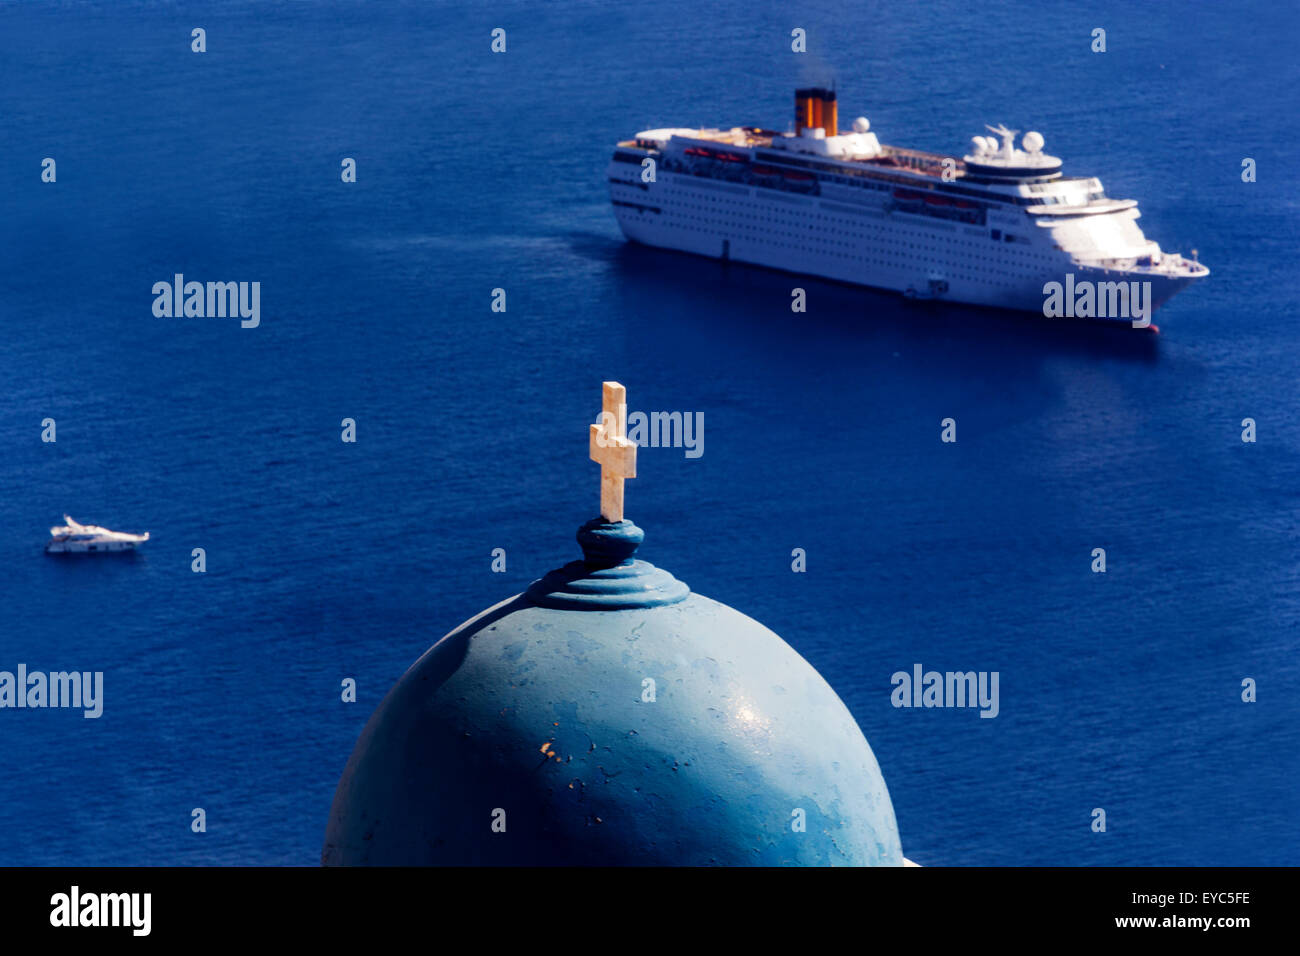 Griechische Insel Santorini blaue Kuppel Kirche mit Kreuz auf und Kreuzfahrtschiff auf dem Meer Griechenland Inseln Europa Ozean Stockfoto